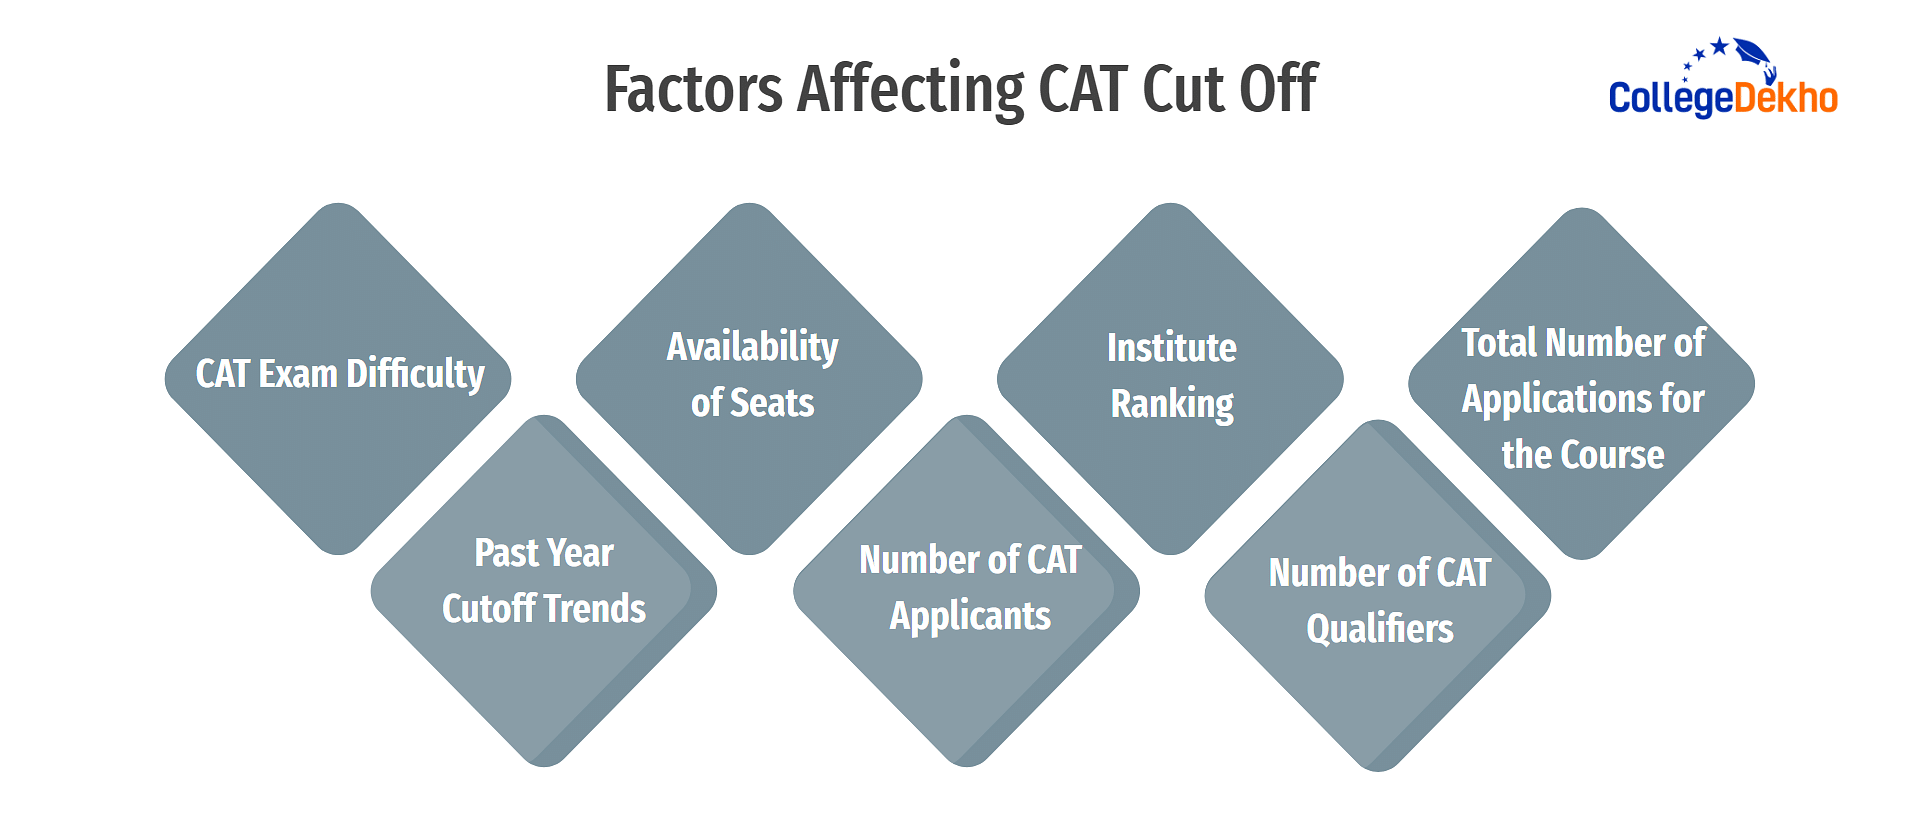 Factors Affecting CAT Cut Off